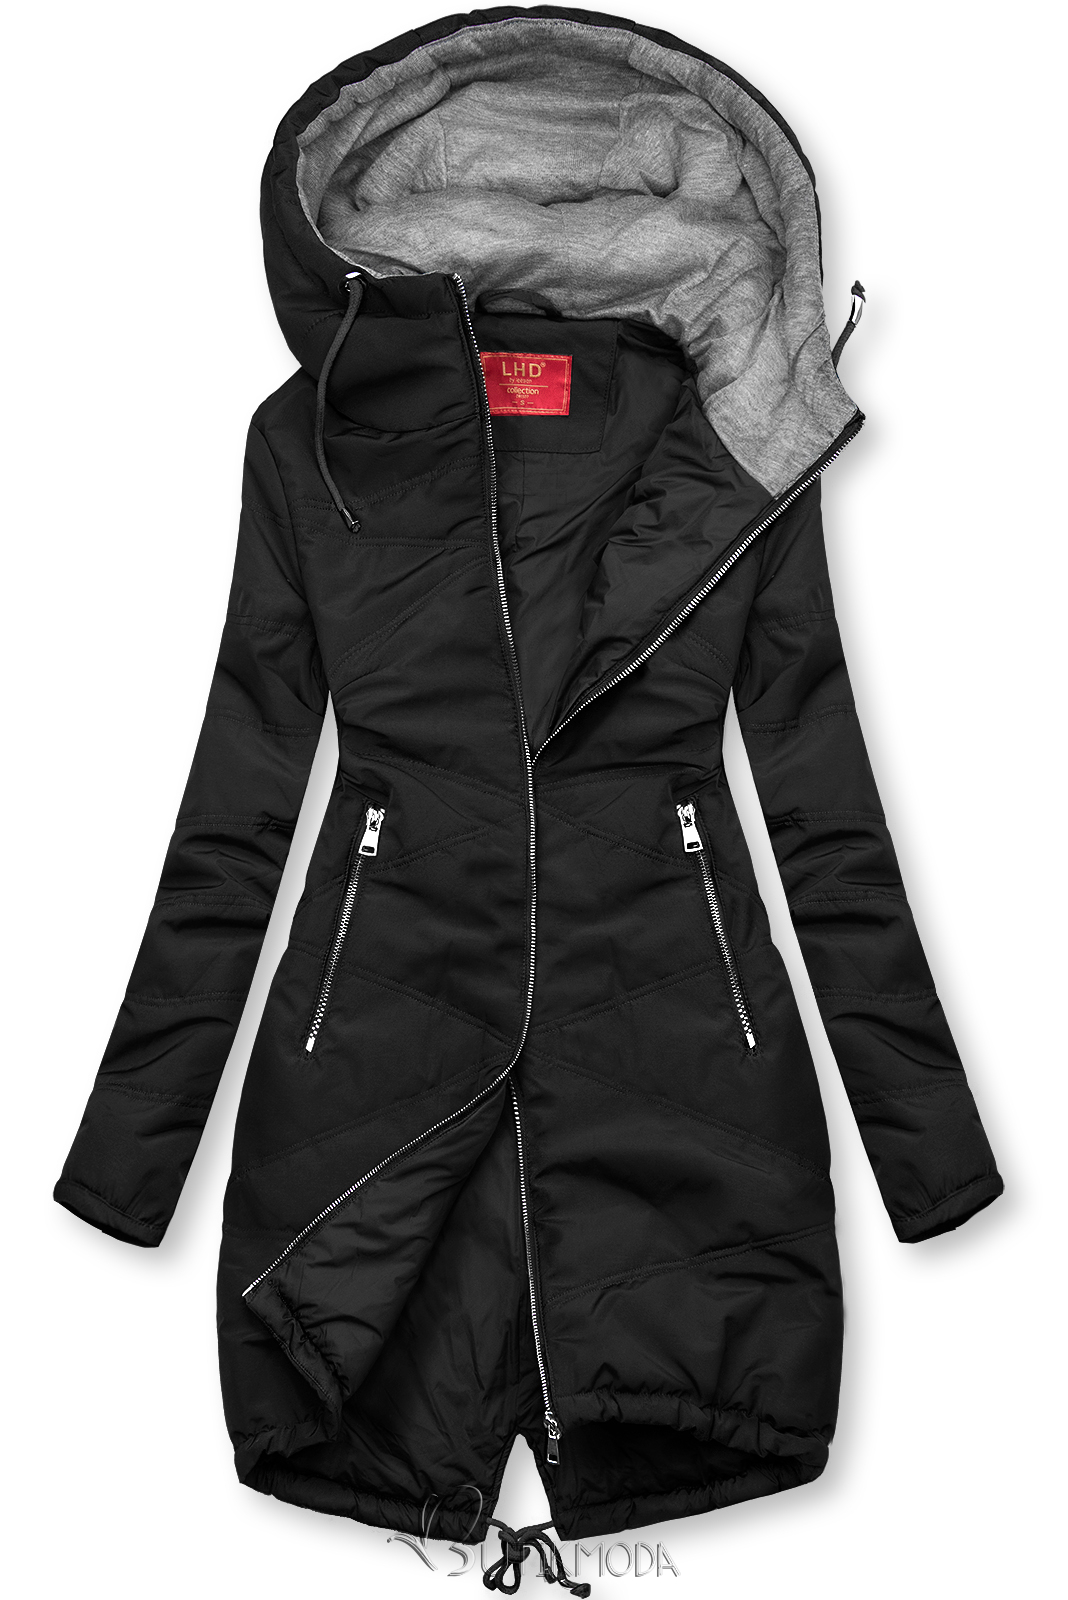 Fekete színű hosszított kabát kapucnival